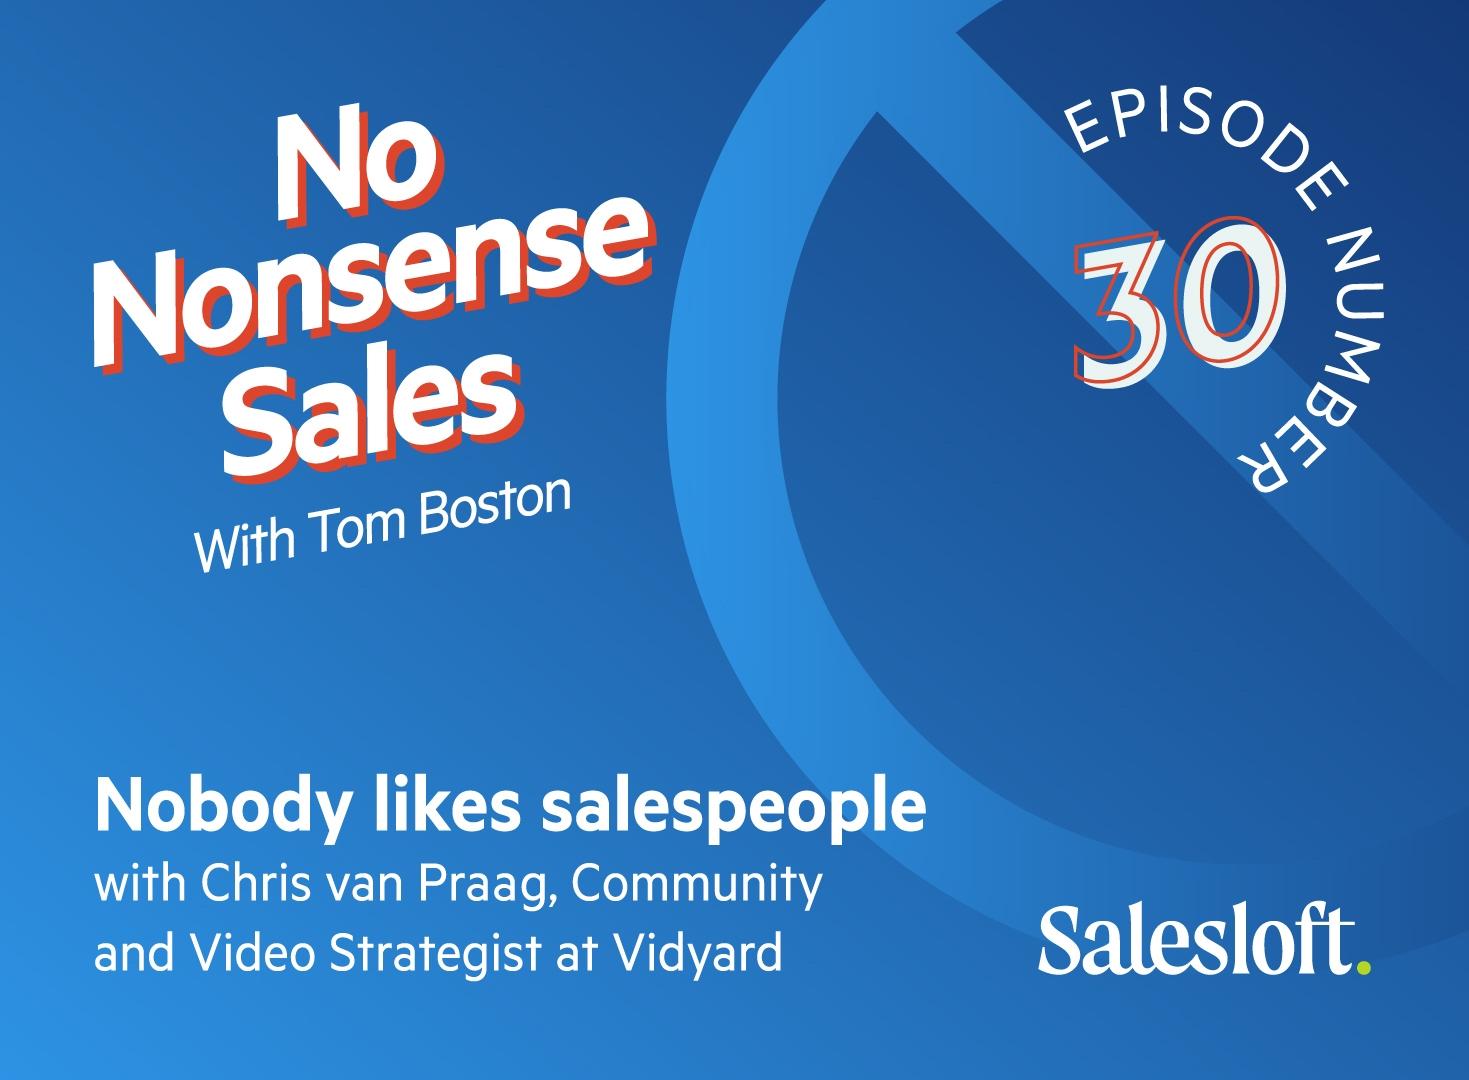 No Nonsense Sales Episode 30